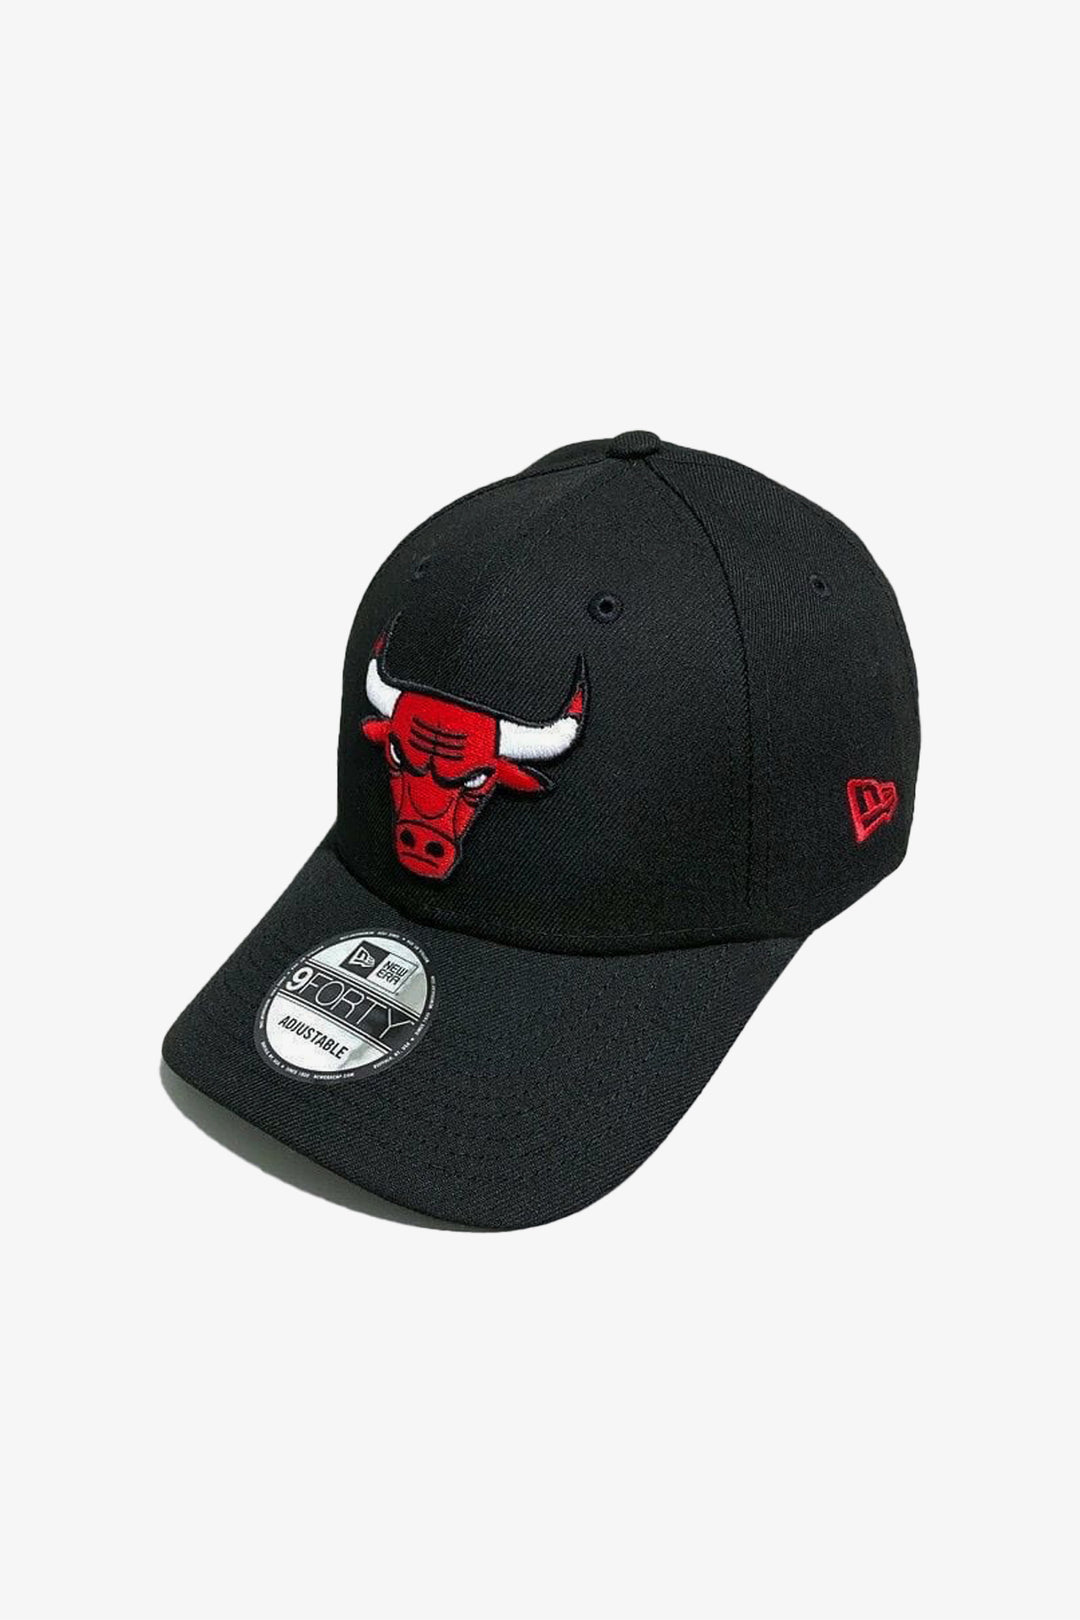 Black & Red Chicago Bulls Baseball Cap  - S23 - MCP124R